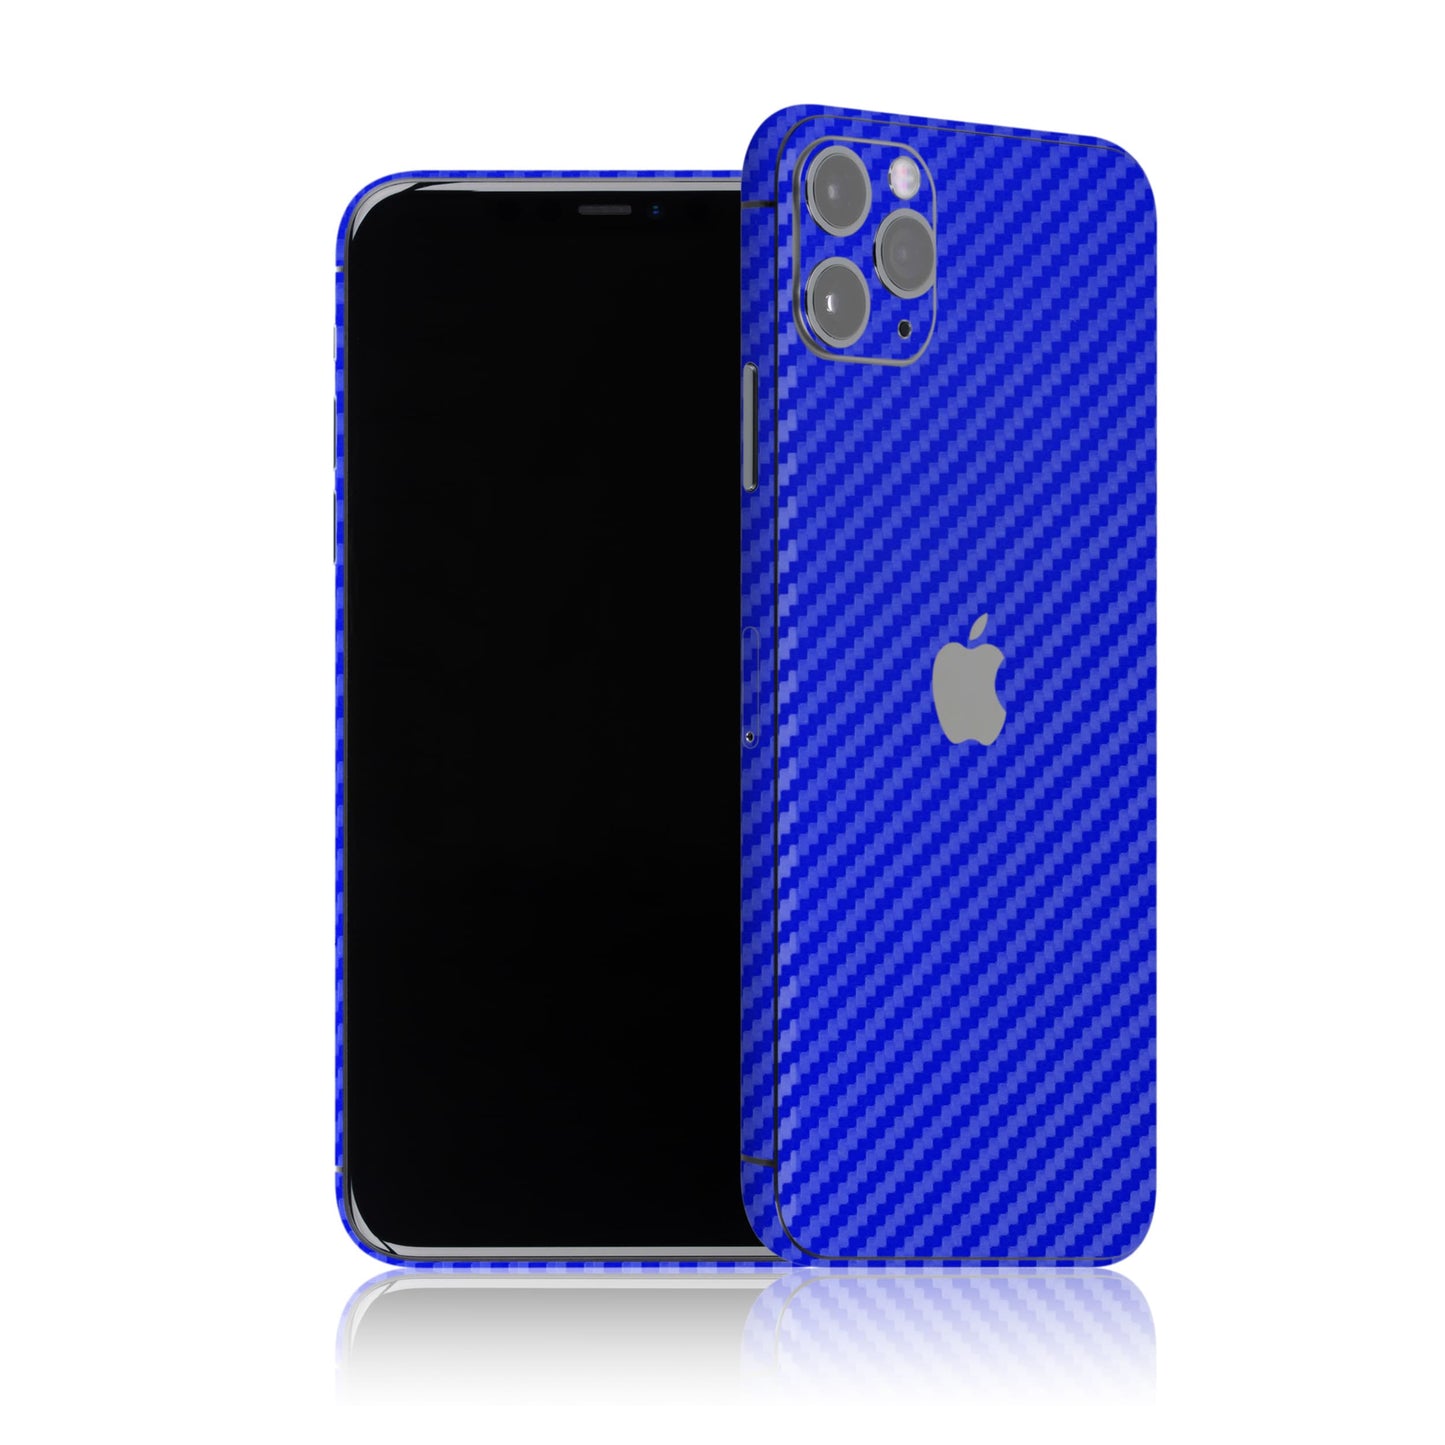 iPhone 11 Pro Max - Carbono